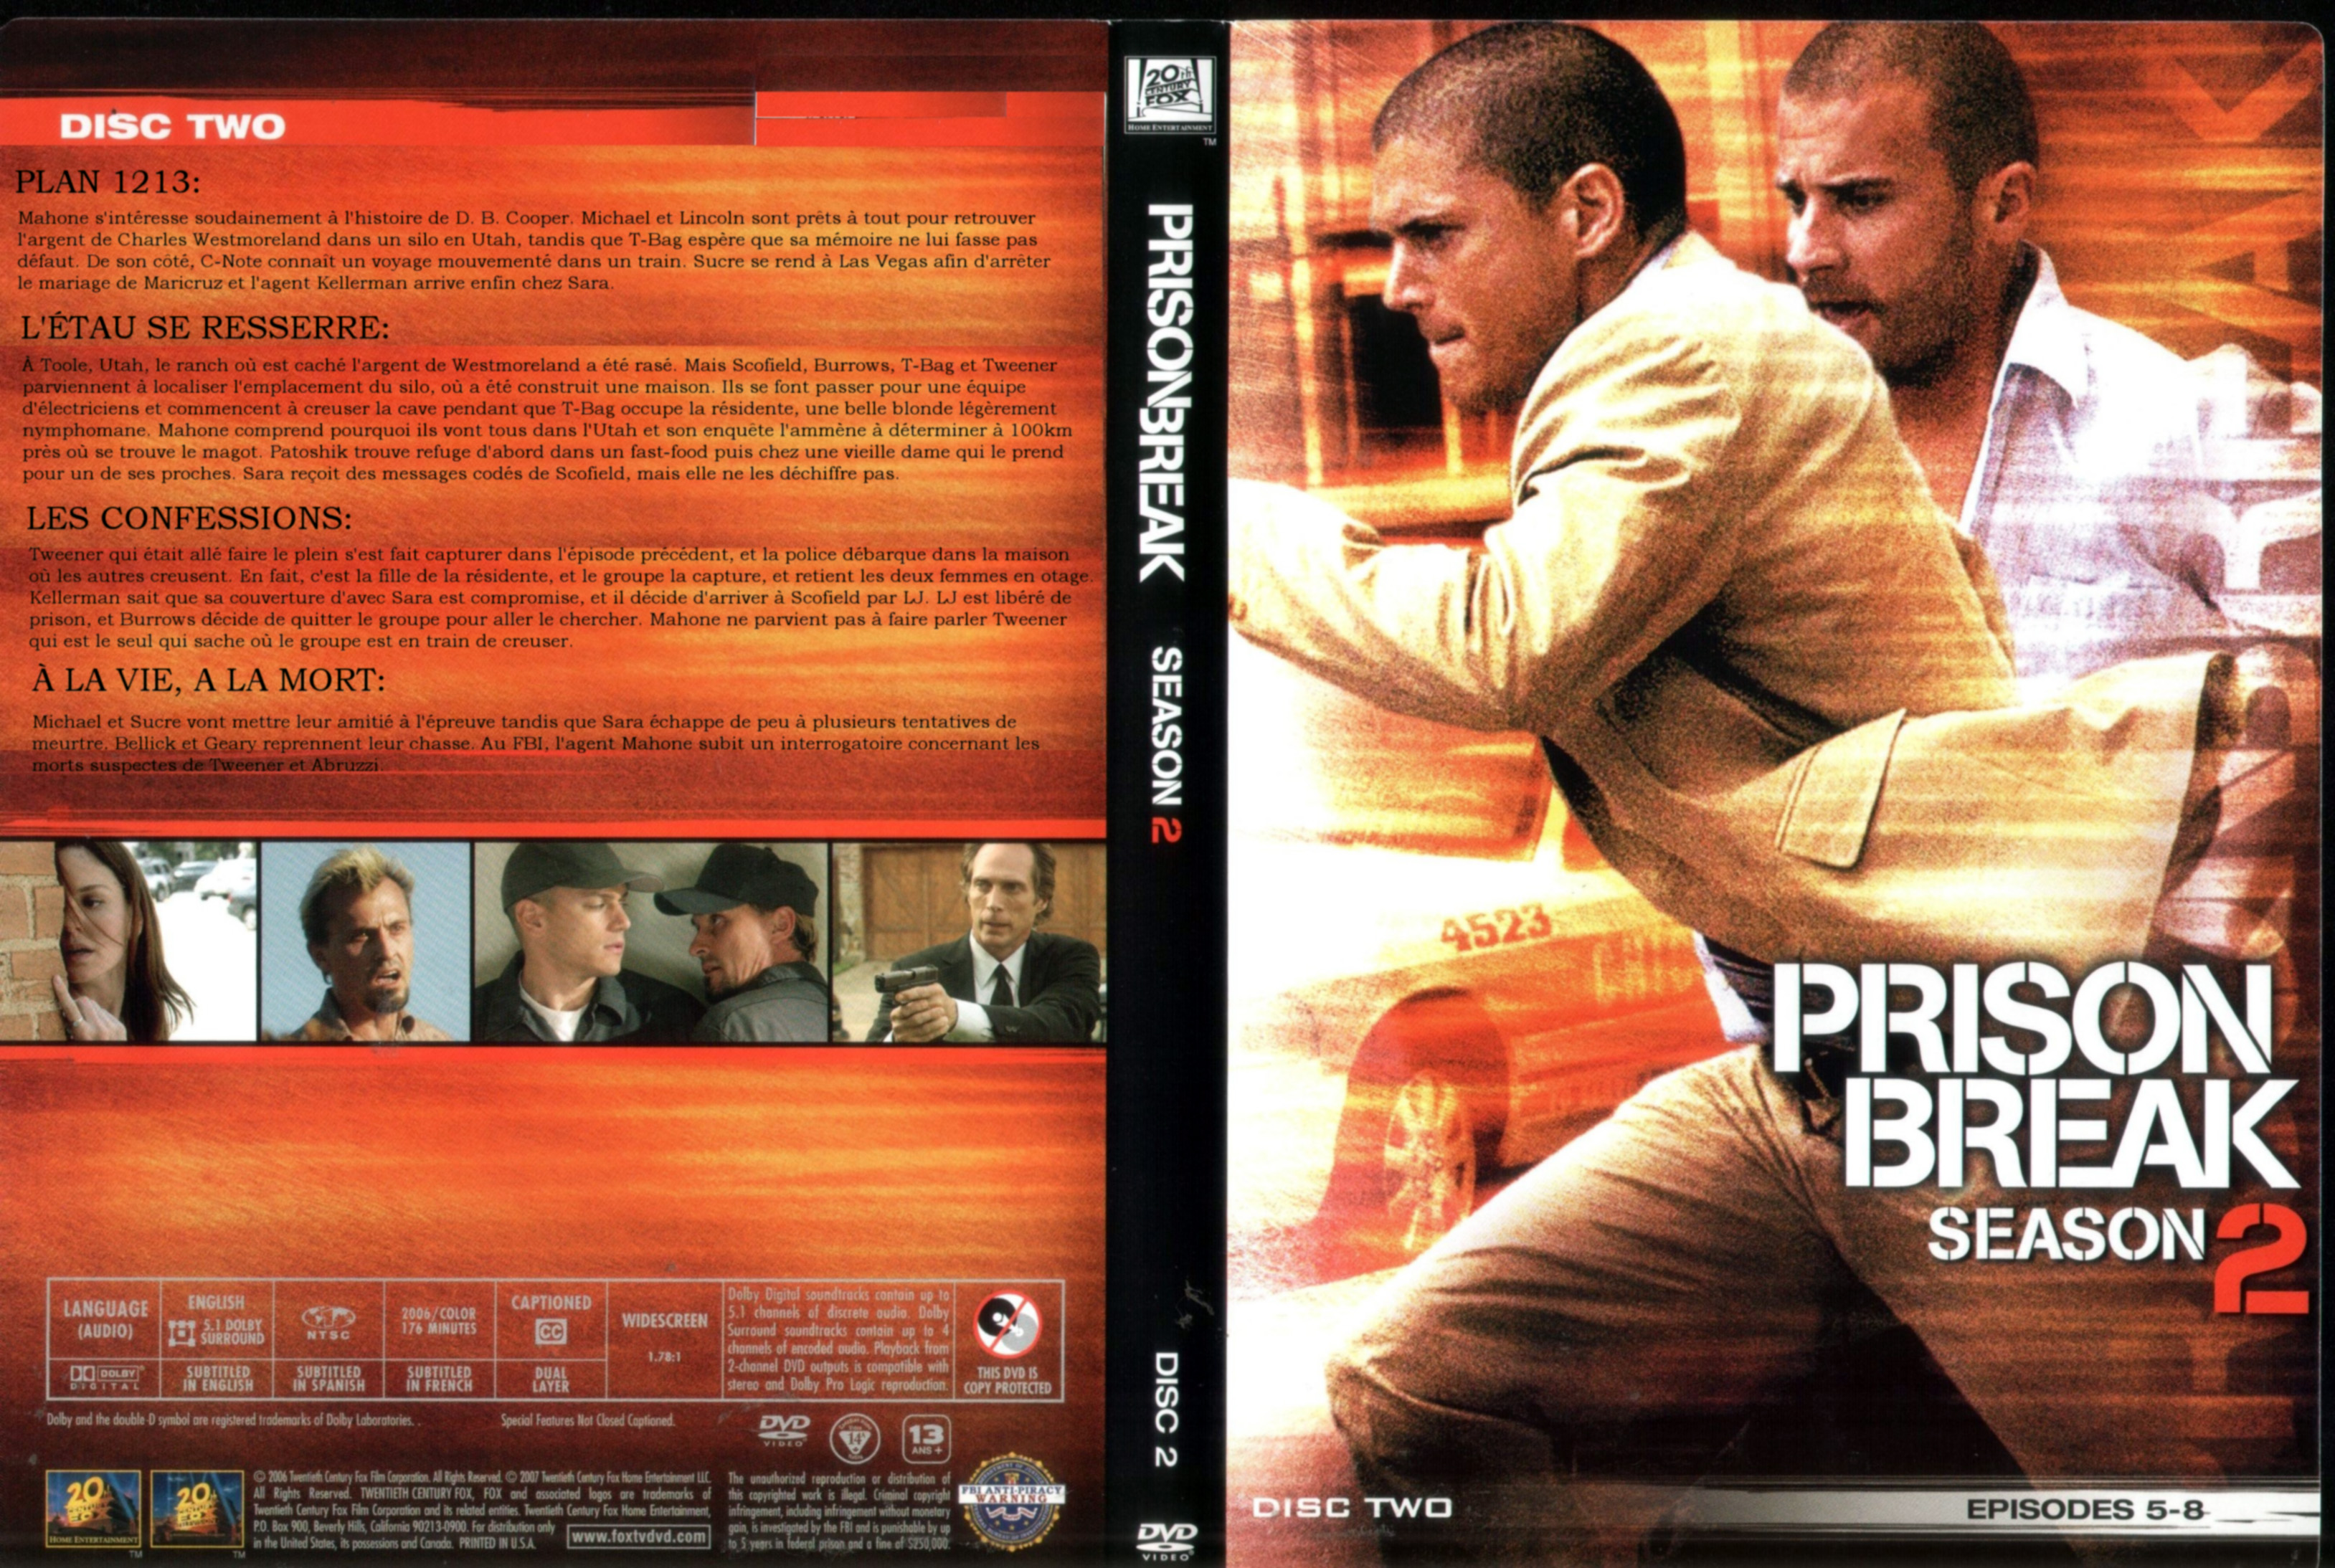 Jaquette DVD Prison break Saison 2 DVD 2